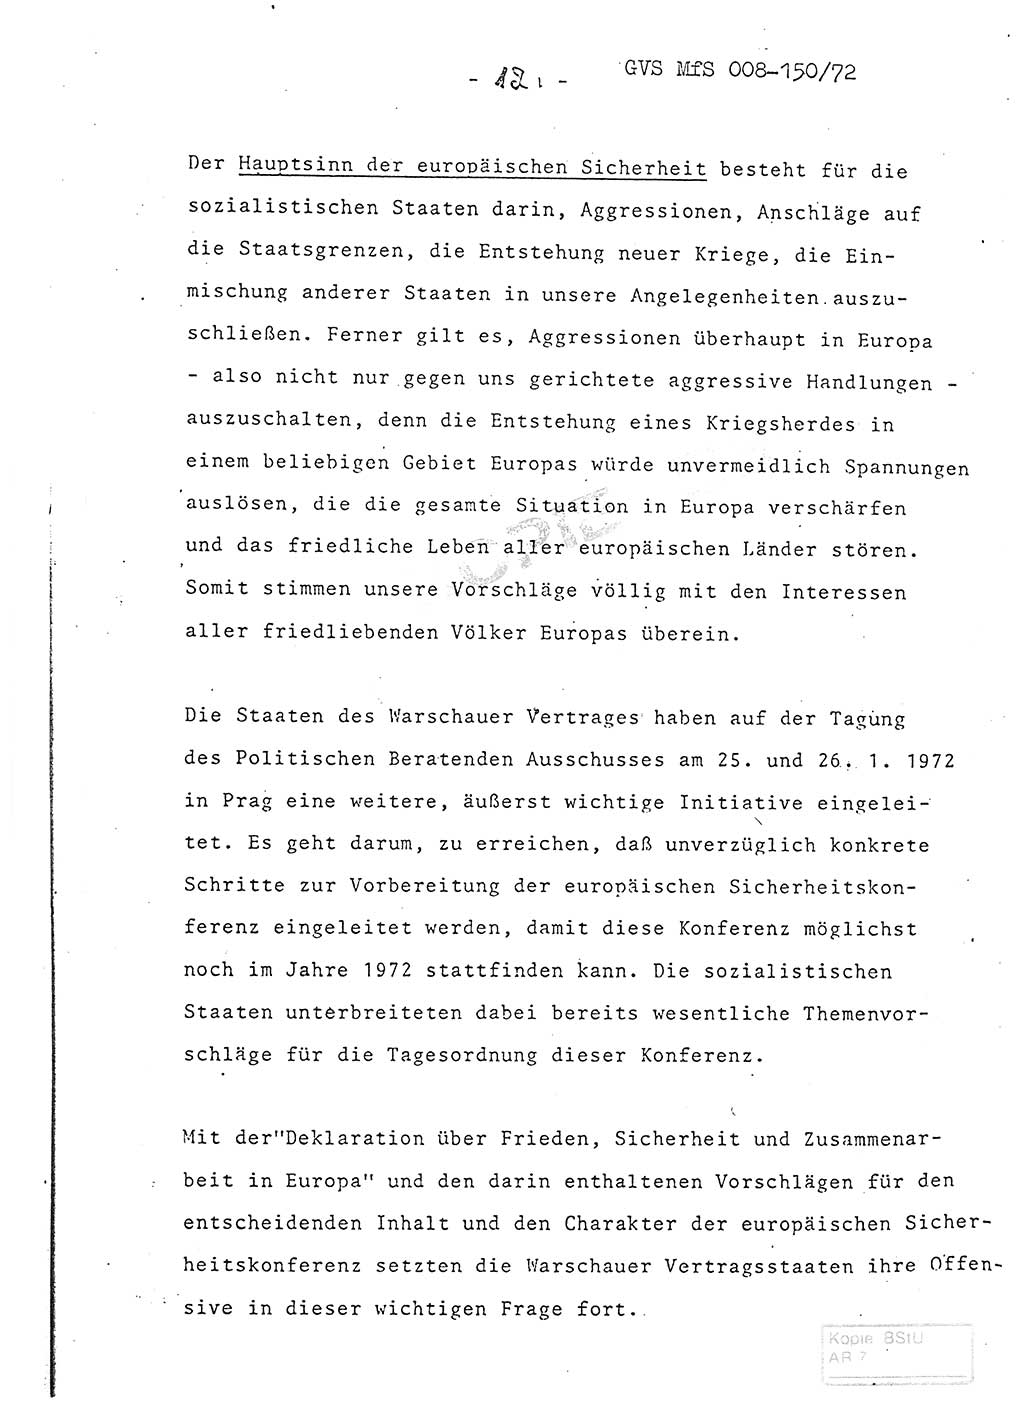 Referat (Entwurf) des Genossen Minister (Generaloberst Erich Mielke) auf der Dienstkonferenz 1972, Ministerium für Staatssicherheit (MfS) [Deutsche Demokratische Republik (DDR)], Der Minister, Geheime Verschlußsache (GVS) 008-150/72, Berlin 25.2.1972, Seite 12 (Ref. Entw. DK MfS DDR Min. GVS 008-150/72 1972, S. 12)